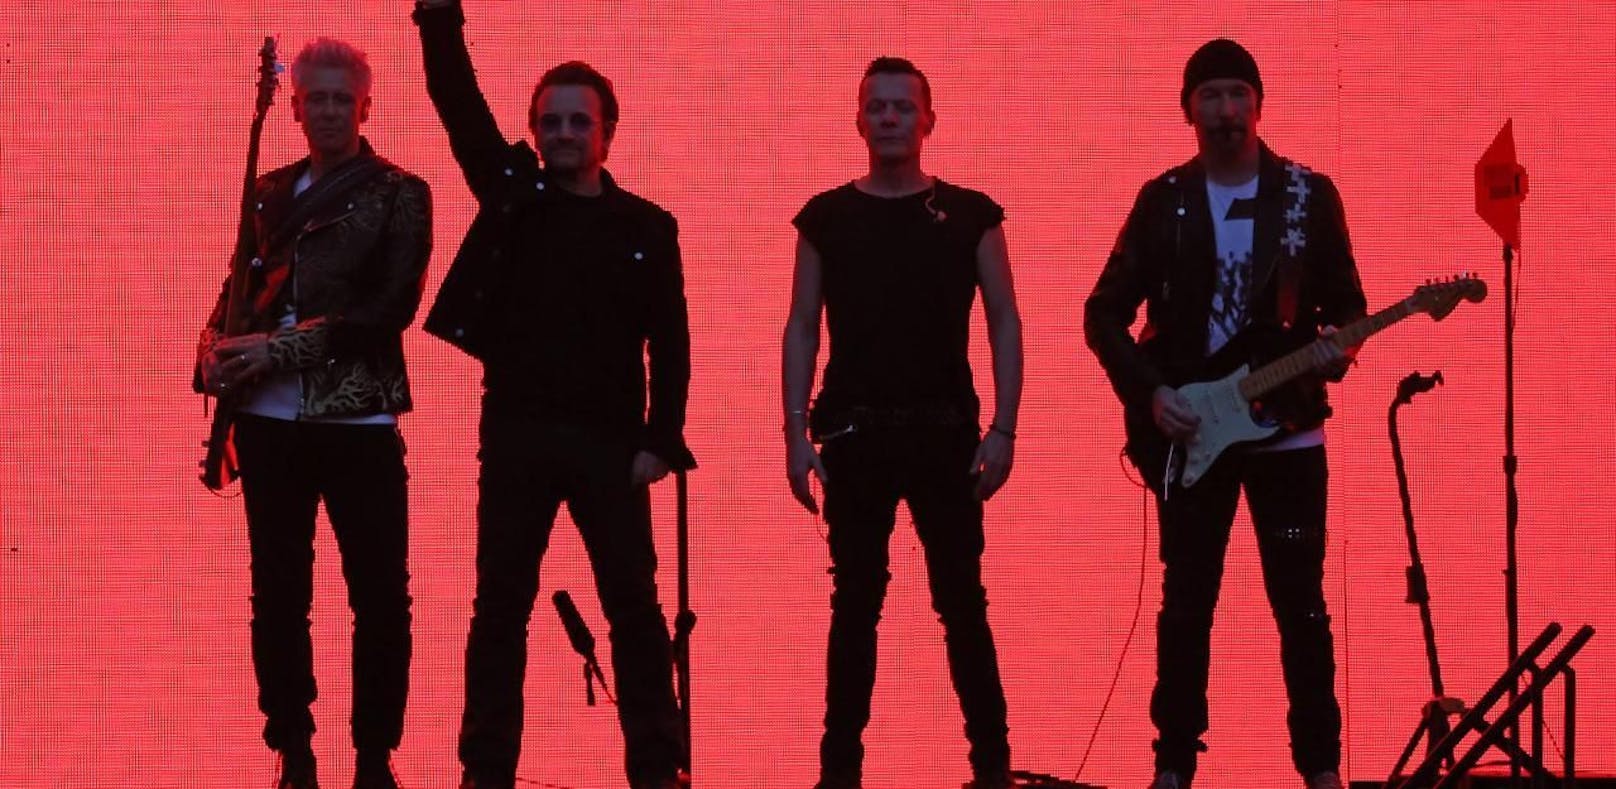 Heftige Proteste zwangen U2 zu Konzertabsage